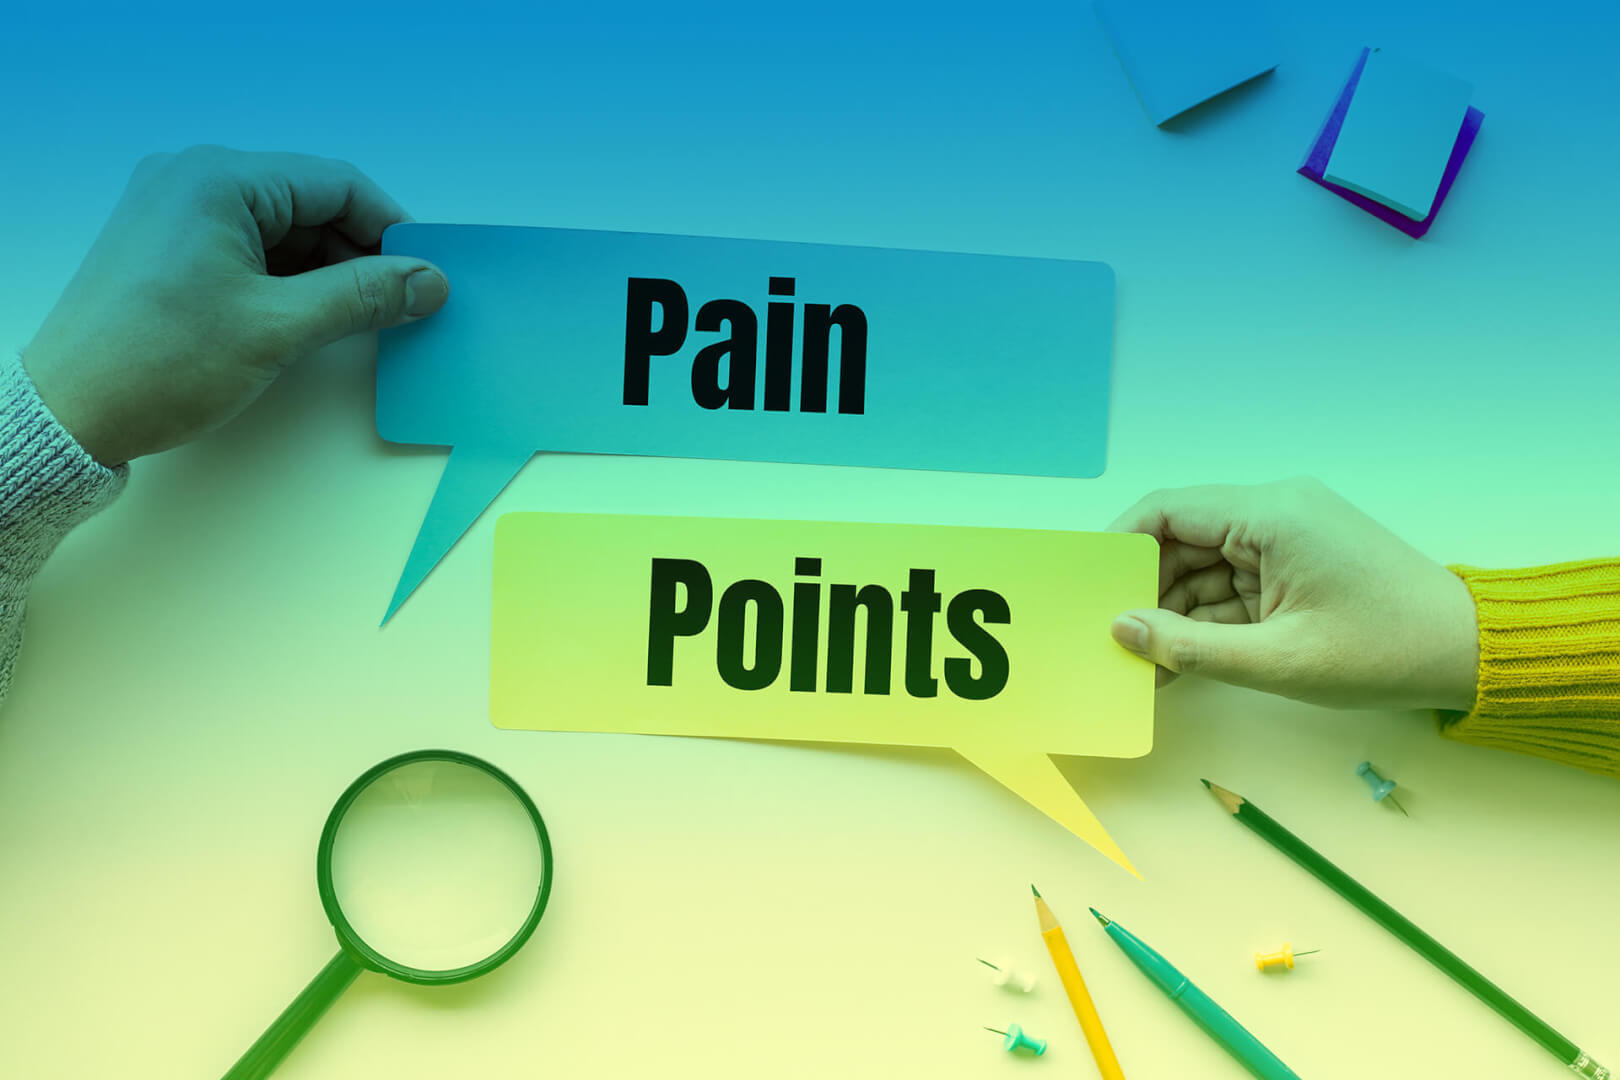 Pain-Points und Gain-Points im digitalen Zeitalter